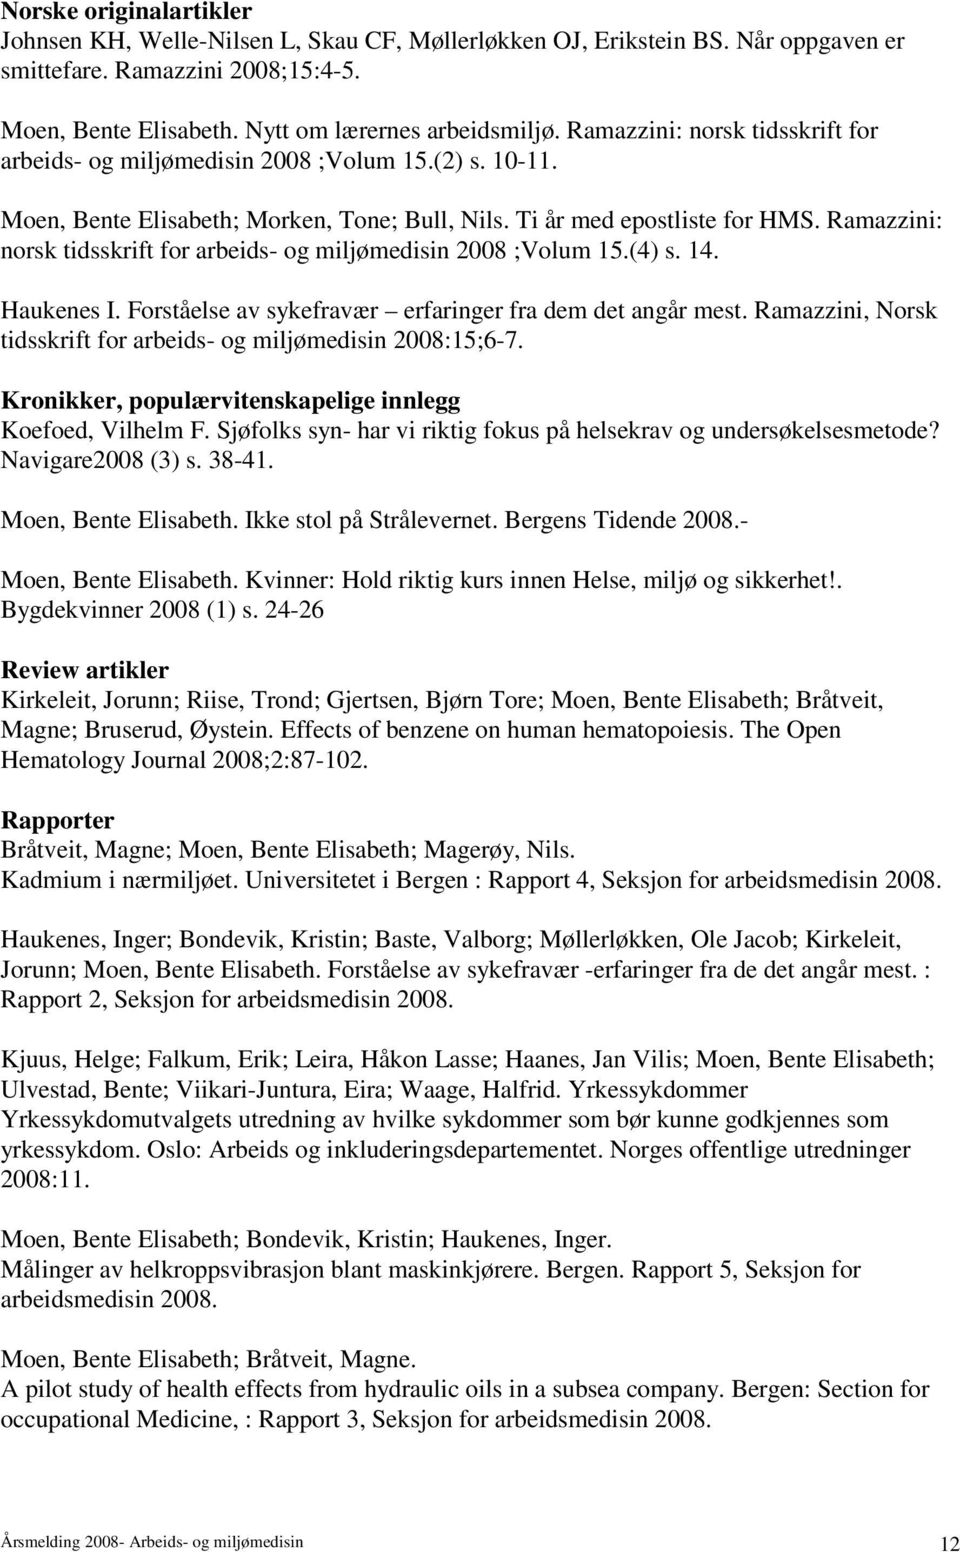 Ramazzini: norsk tidsskrift for arbeids- og miljømedisin 2008 ;Volum 15.(4) s. 14. Haukenes I. Forståelse av sykefravær erfaringer fra dem det angår mest.